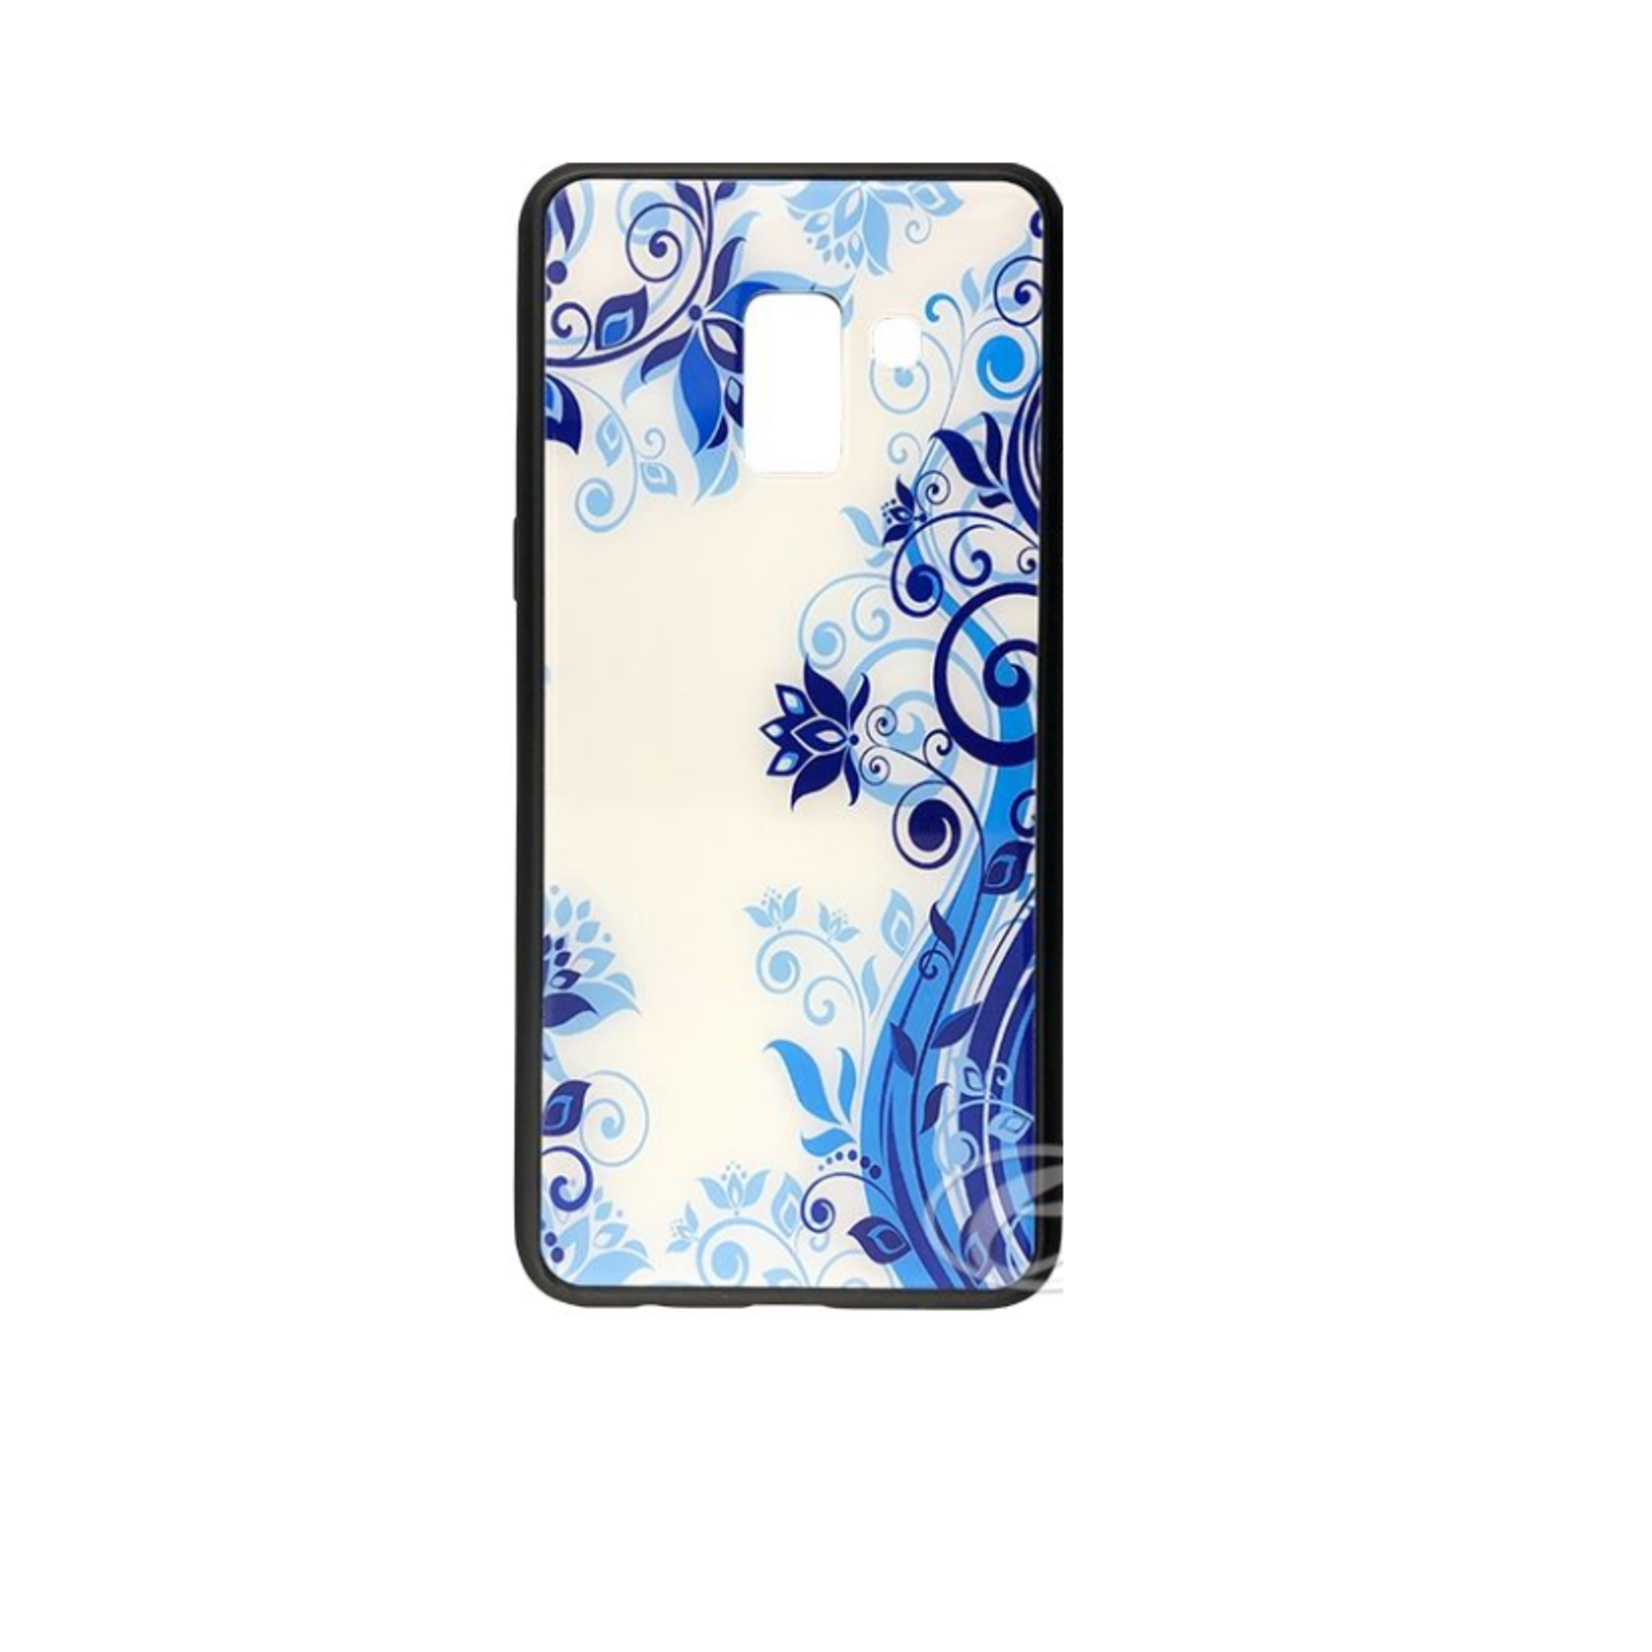 Samsung ÉTUI SAMSUNG A8 2018 Blue Flowers glaze